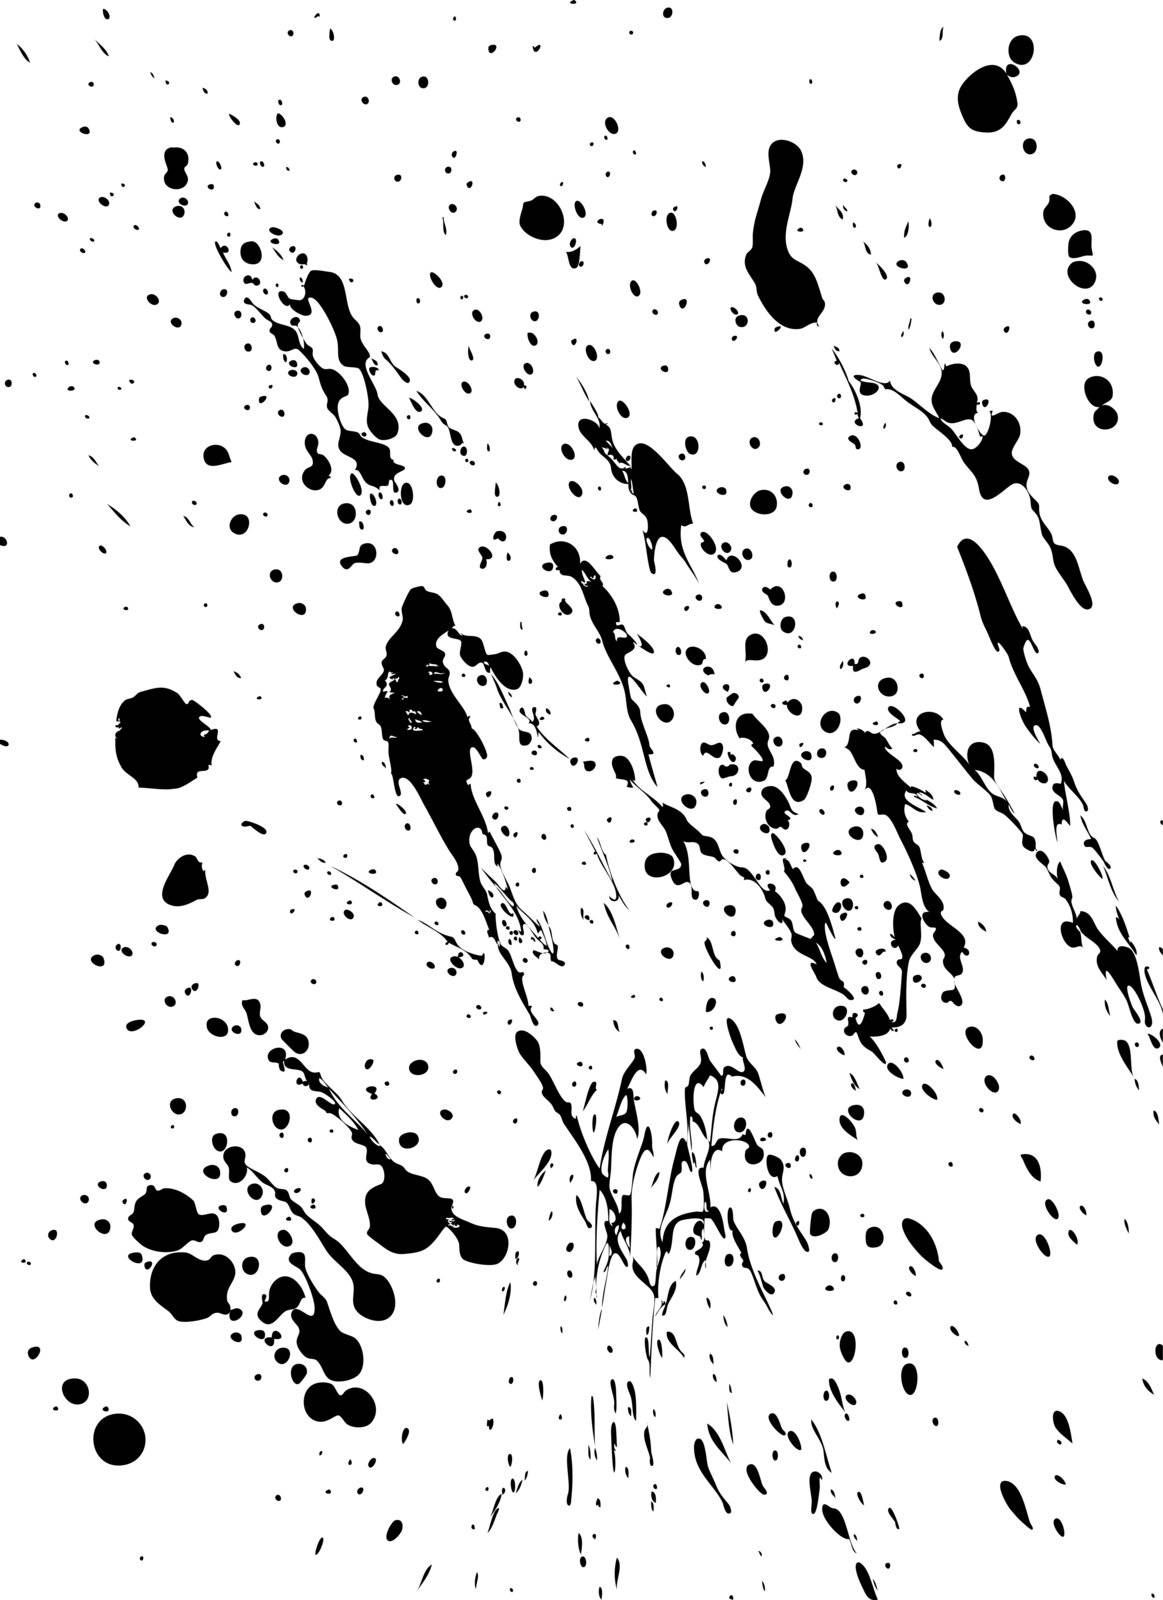 An image of oil / paint splatter.